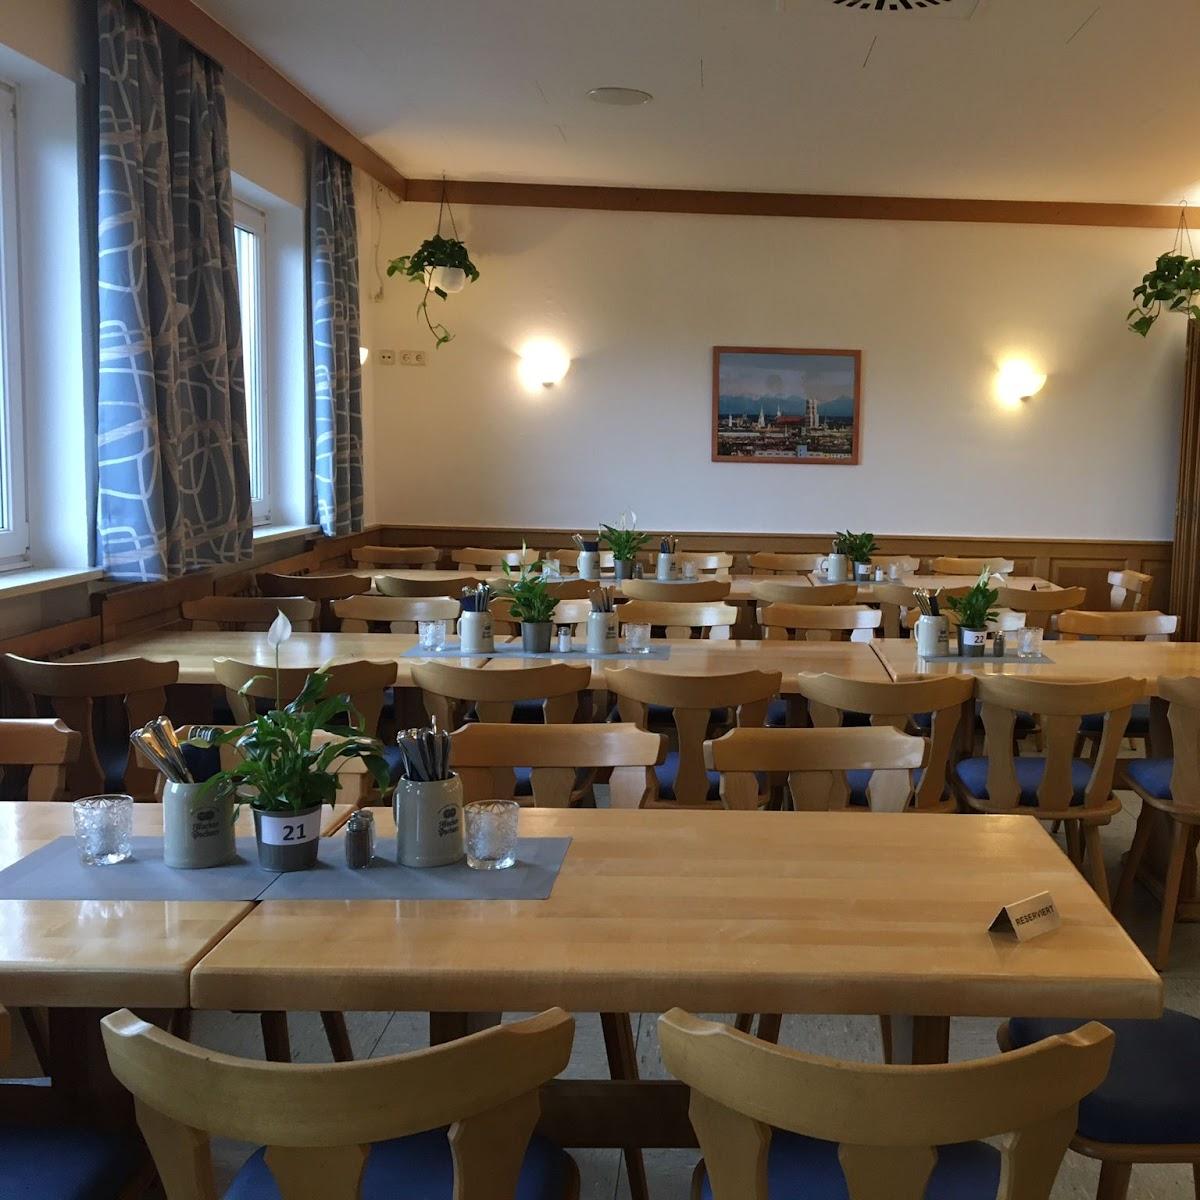 Restaurant "Sportgaststätte Gernlinden" in Maisach